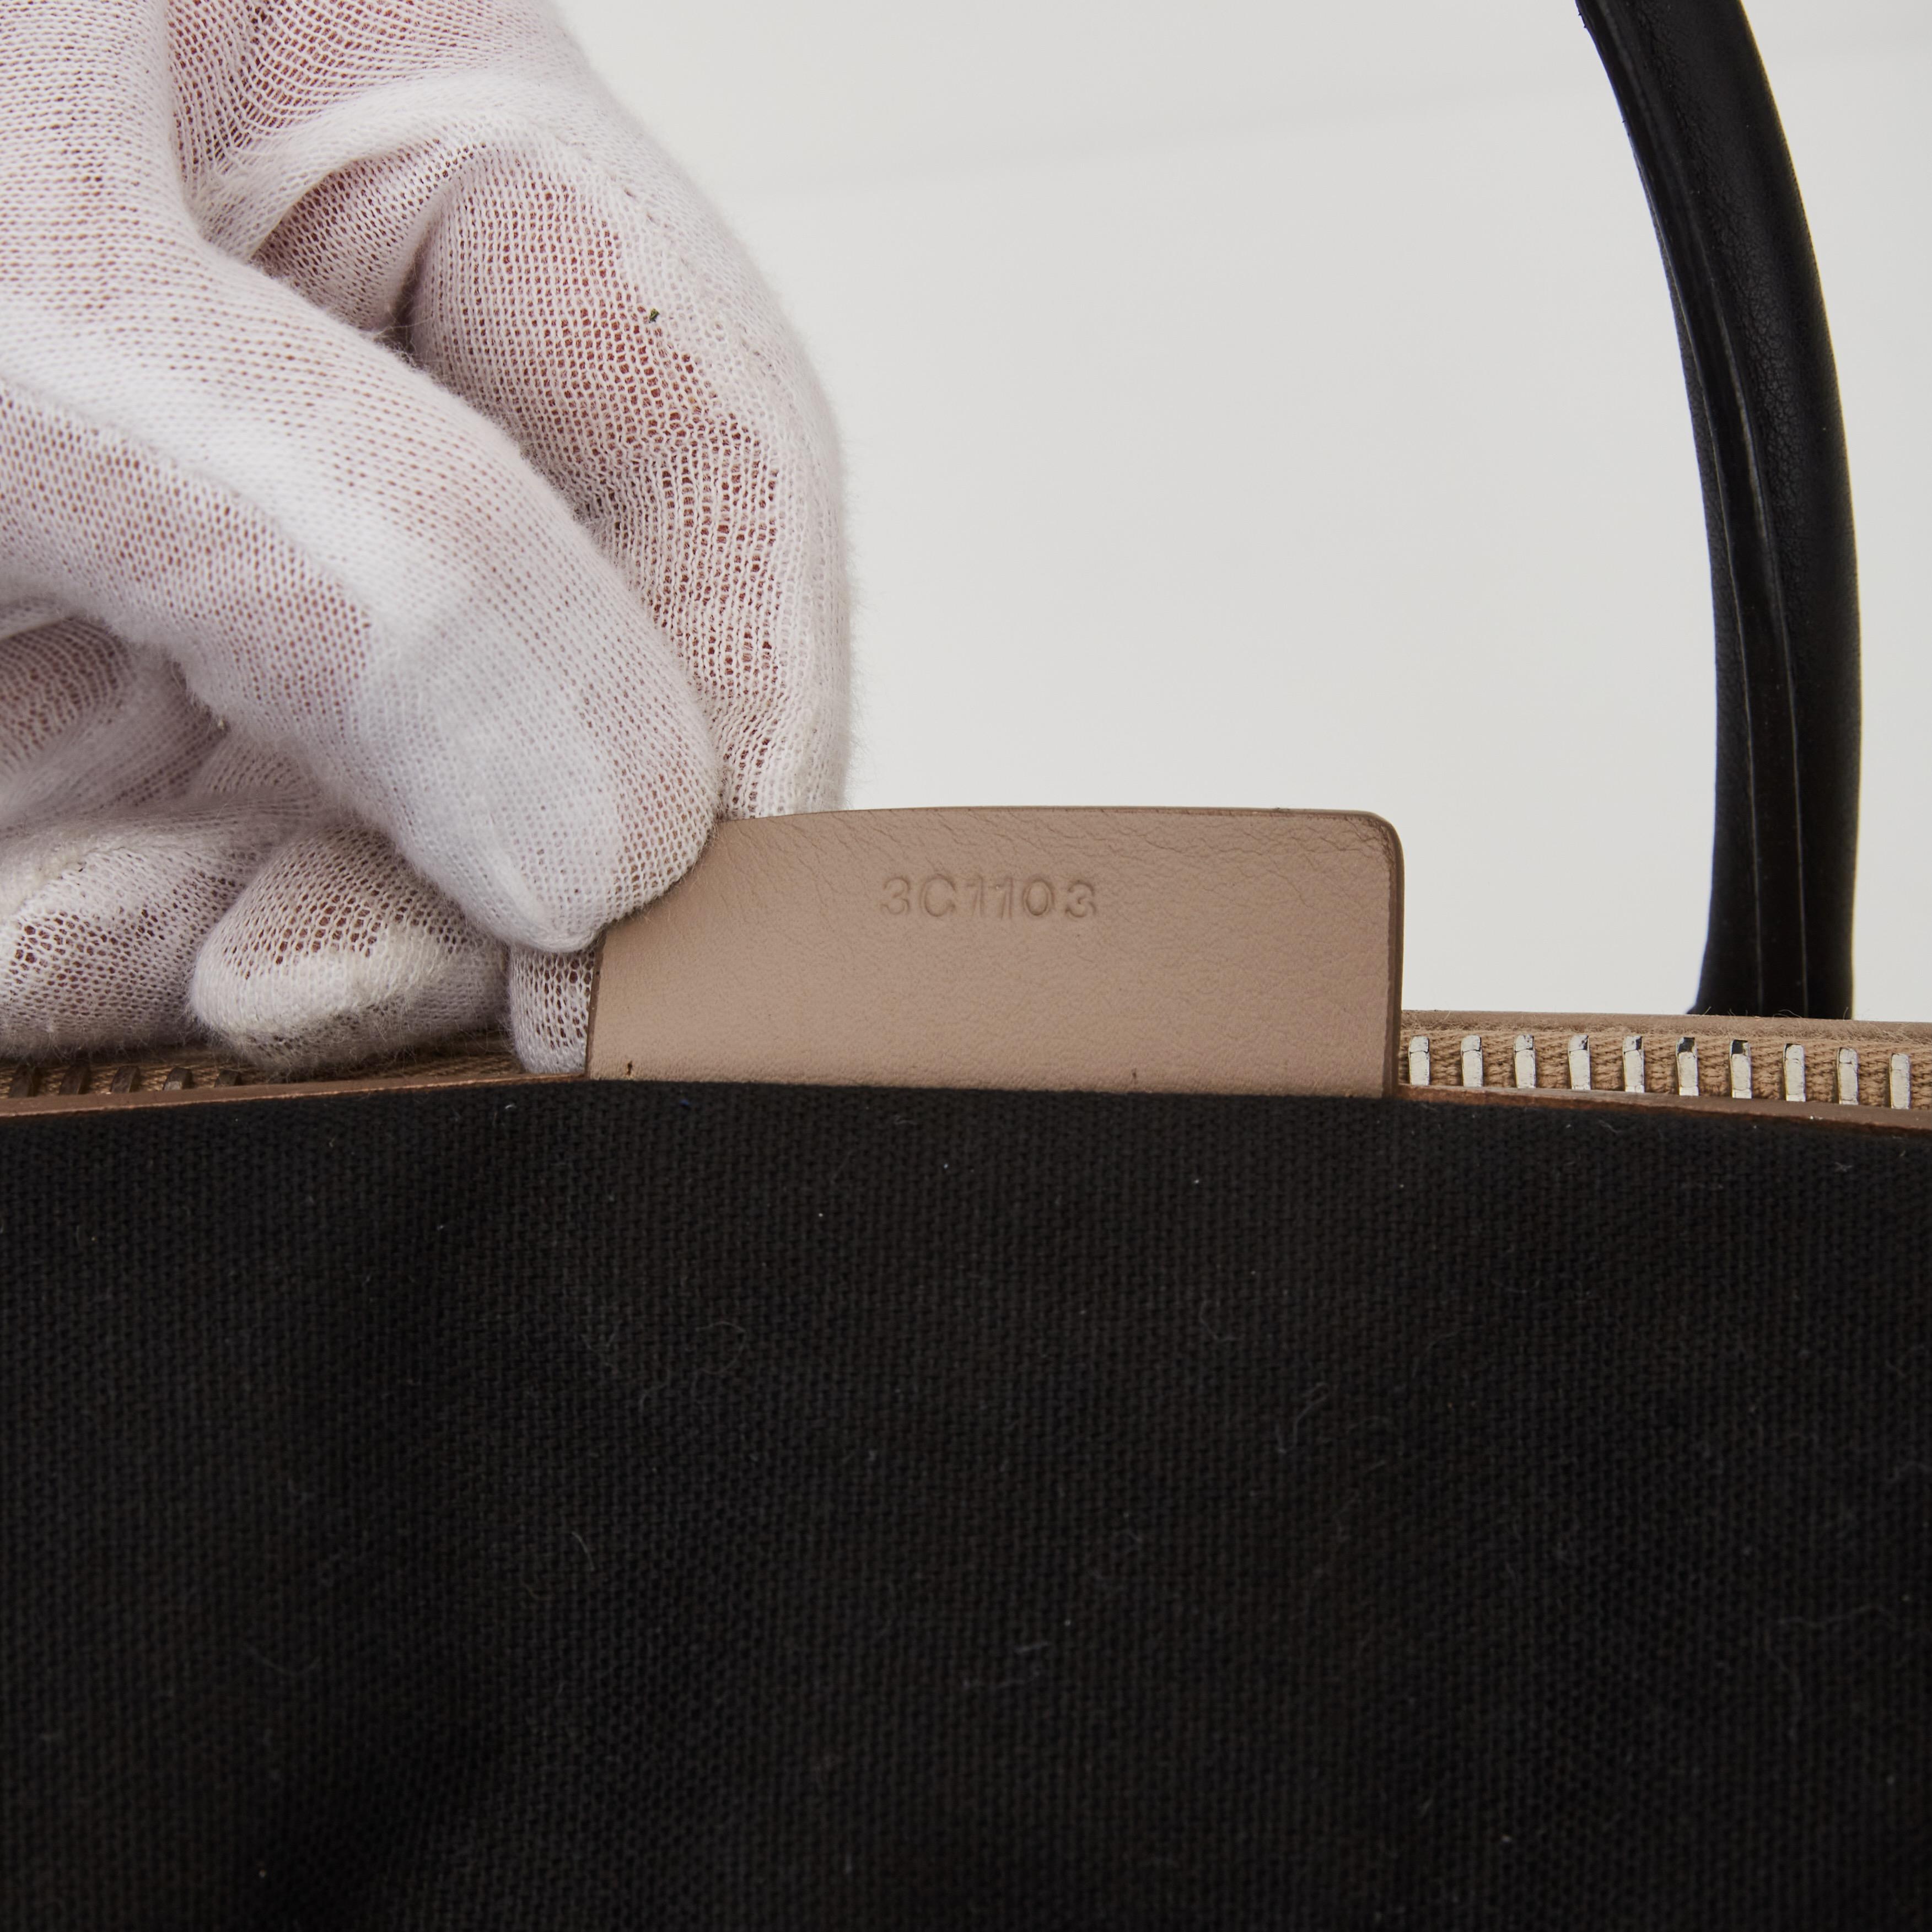 Givenchy Calfskin Medium Tri-color Antigona Beige Black White Handbag In Good Condition In Montreal, Quebec